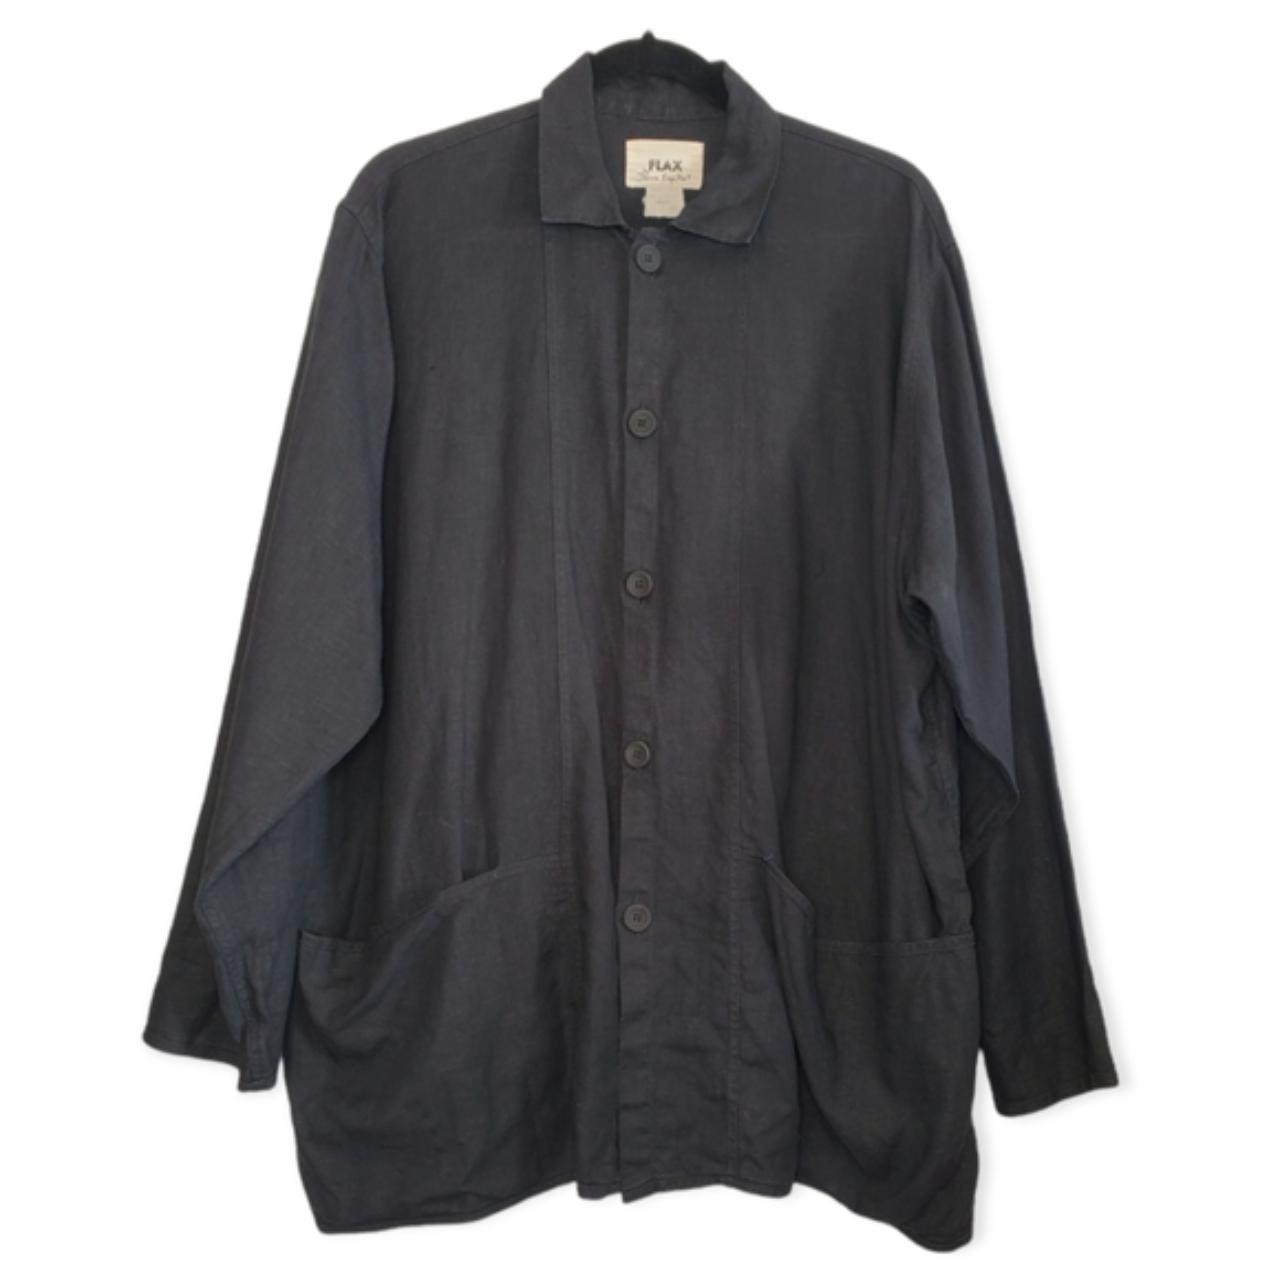 FLAX By Jeanne Engelhart 100% Linen Chore Shirt Coat - Depop